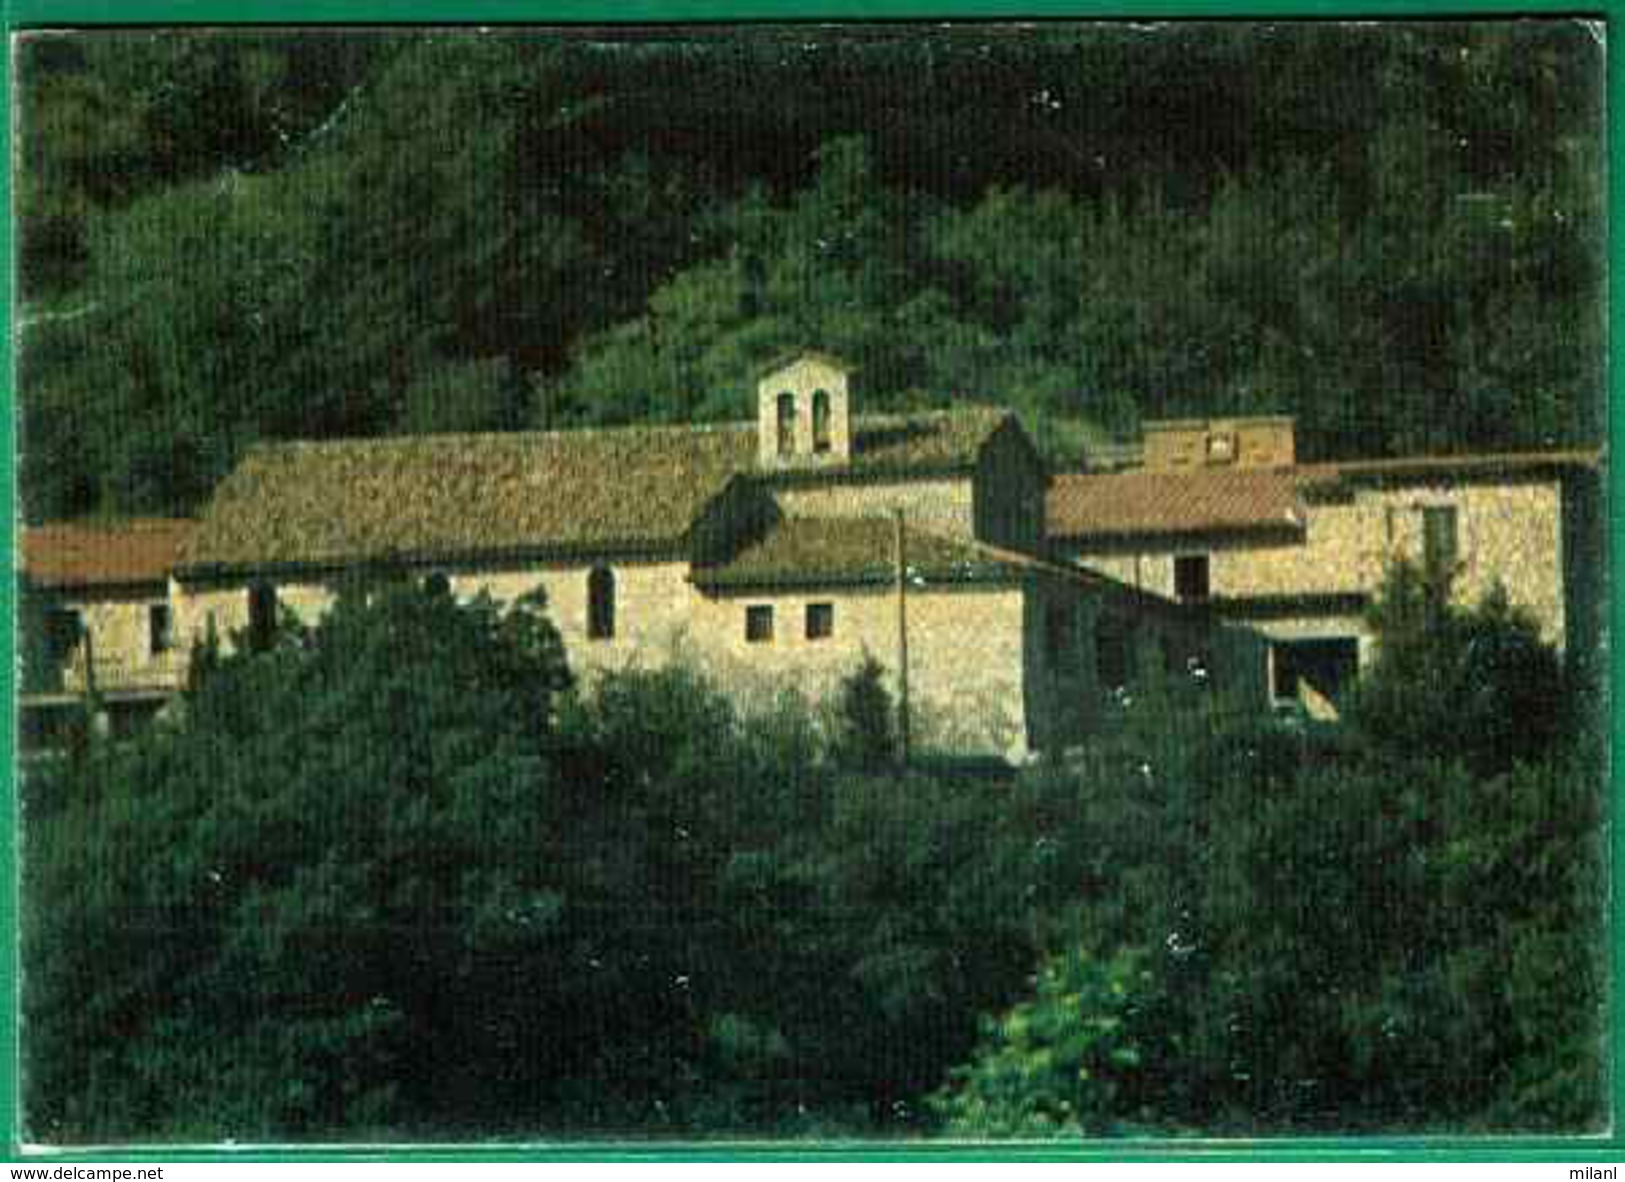 Ct - 1250 -  Collelongo - Chiesa Madonna Del Monte - Chiese E Cattedrali